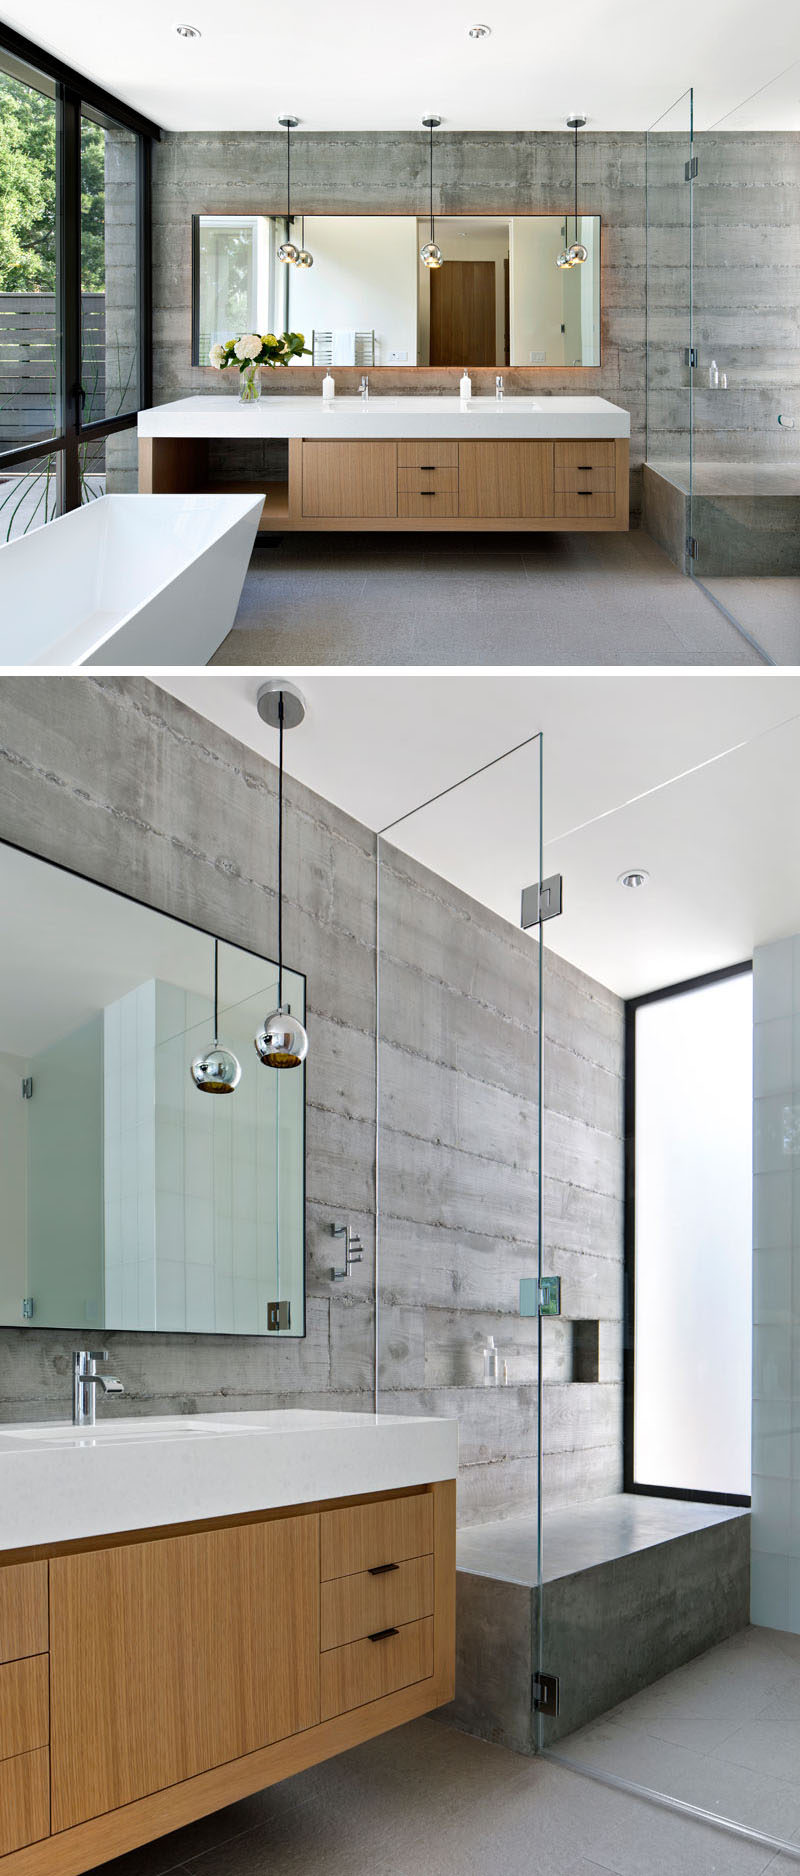 В этой современной ванной комнате бетонные стены и детали, такие как белая отдельная ванна, плавающий двойной туалетный столик с вместительным ящиком для хранения вещей и большое зеркало с подсветкой, придают ванной комнате современный вид, но в то же время придают ей теплый и уютный вид. В душе есть большая бетонная скамейка, подходящая к бетонным стенам, а стеклянная перегородка для душа сохраняет туалетный столик сухим.